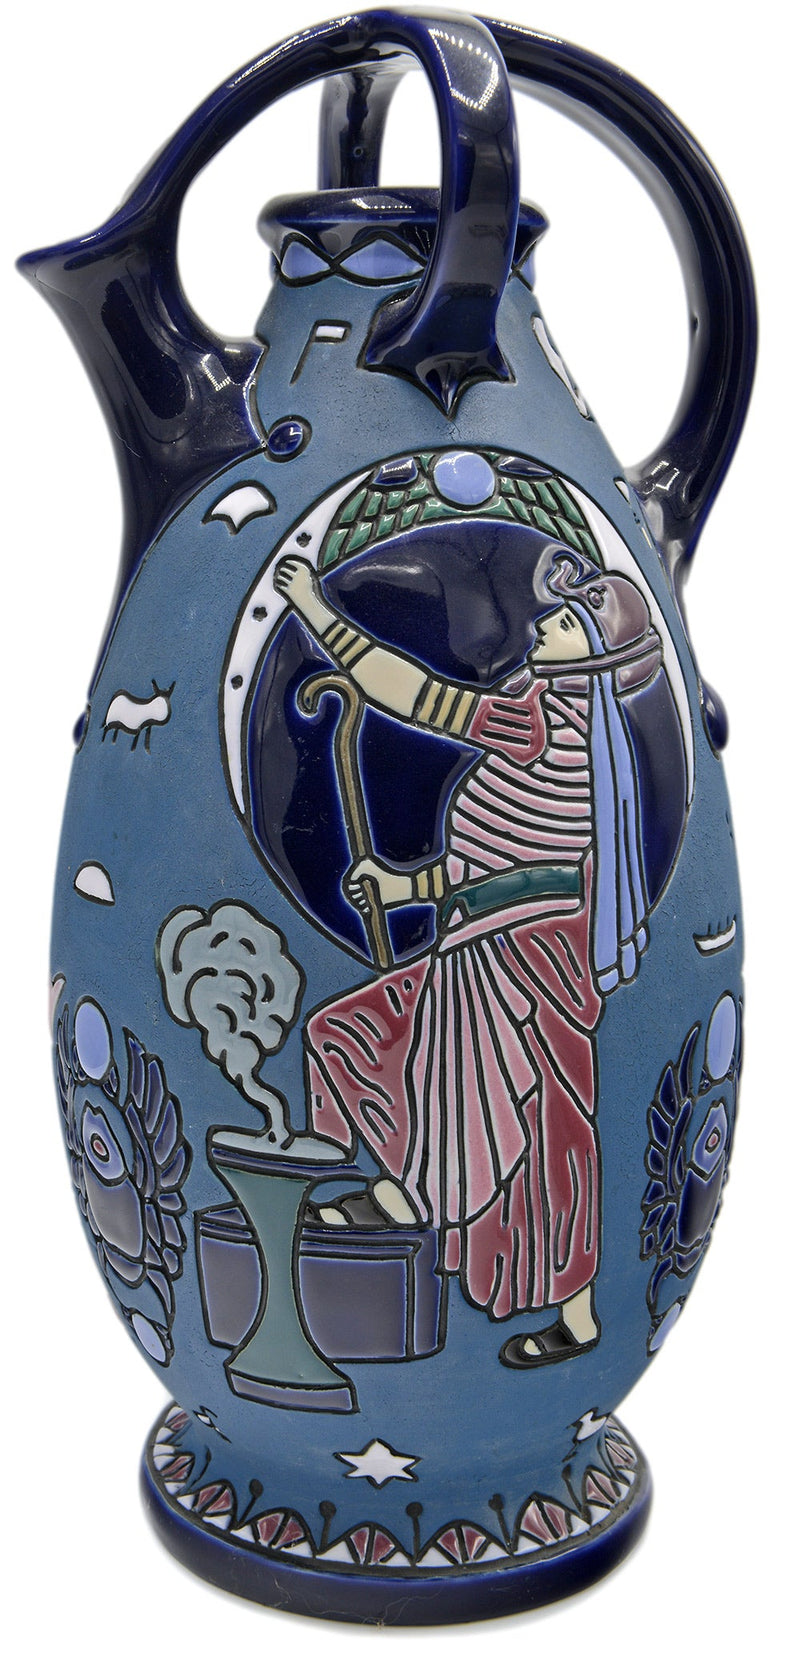 Grande et impressionnante renaissance égyptienne "Amphora". Vase tchèque des années 1920.